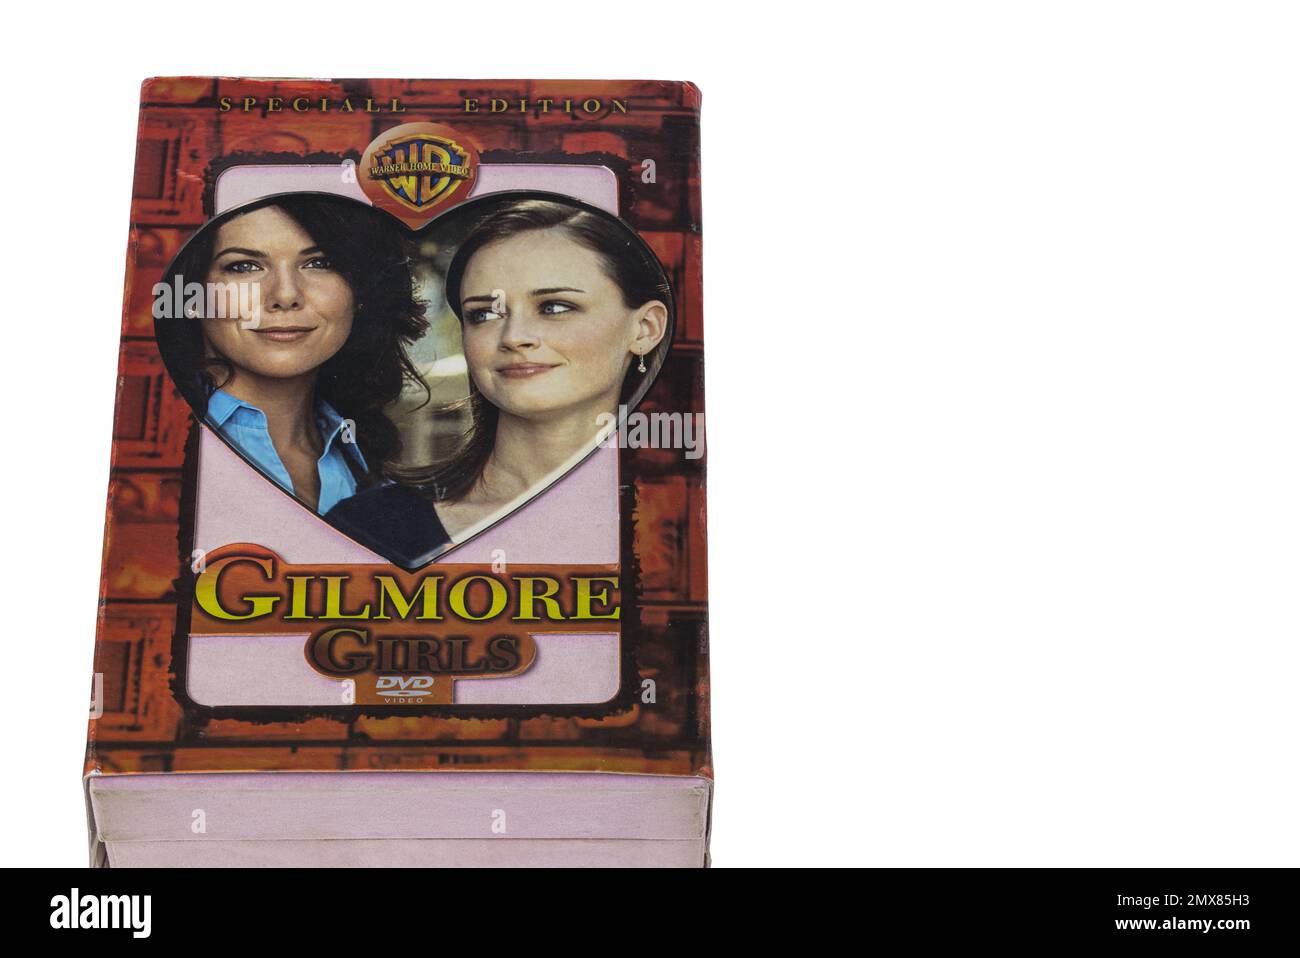 Primo piano di Gilmore girls serie DVD box set isolato su sfondo bianco. Svezia. Foto Stock